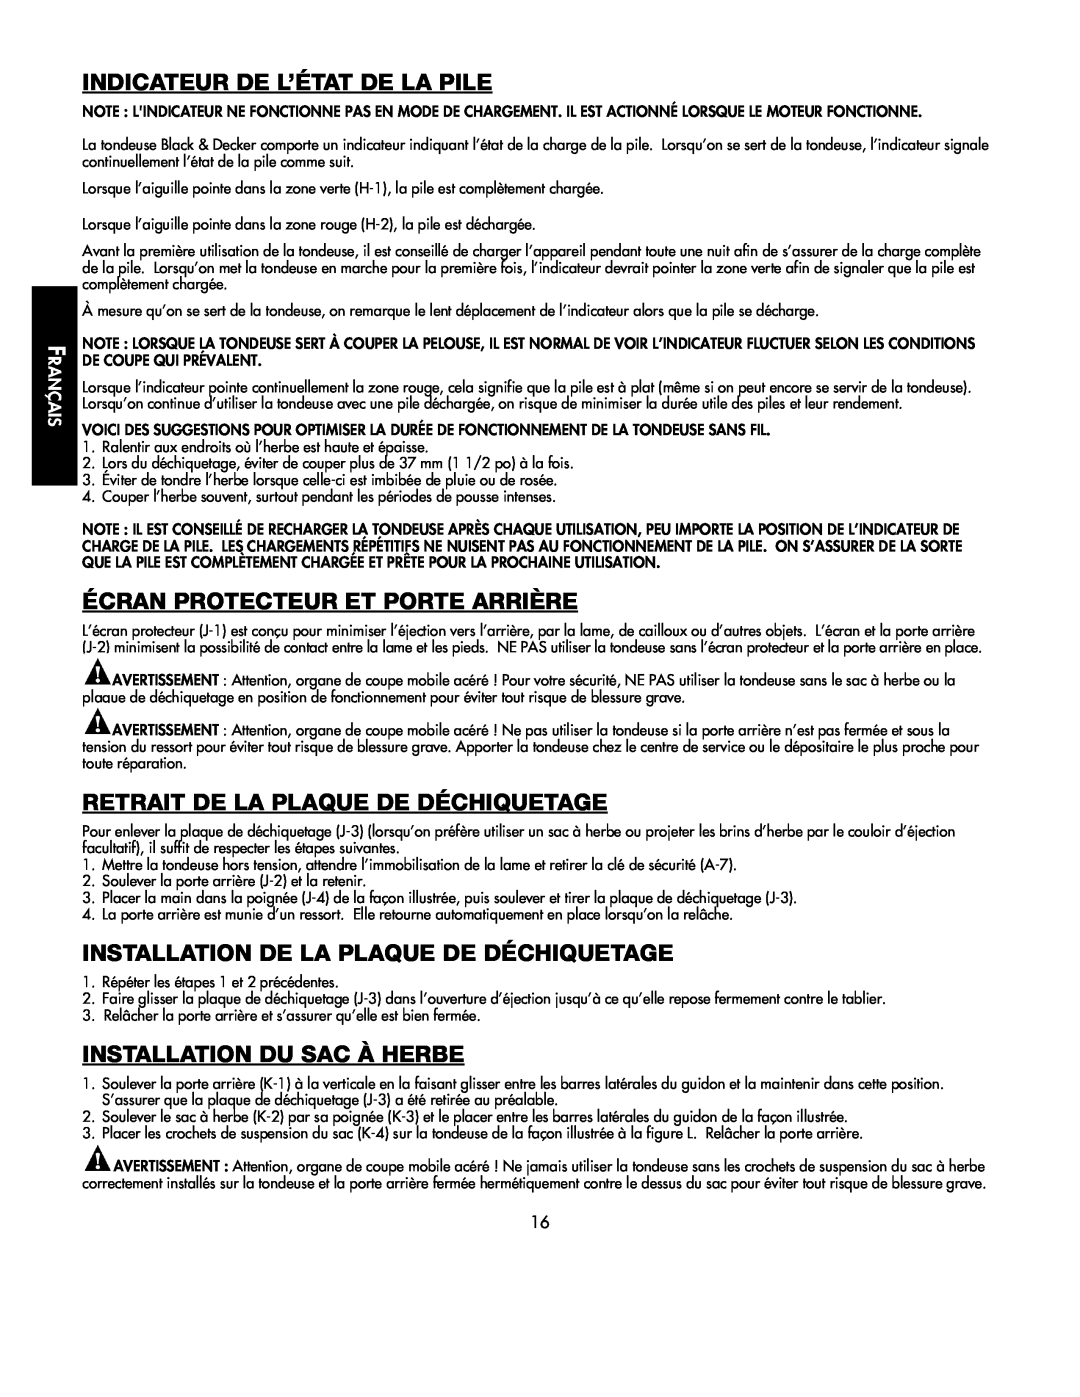 Black & Decker 598968-00 Indicateur De L’État De La Pile, Écran Protecteur Et Porte Arrière, Installation Du Sac À Herbe 